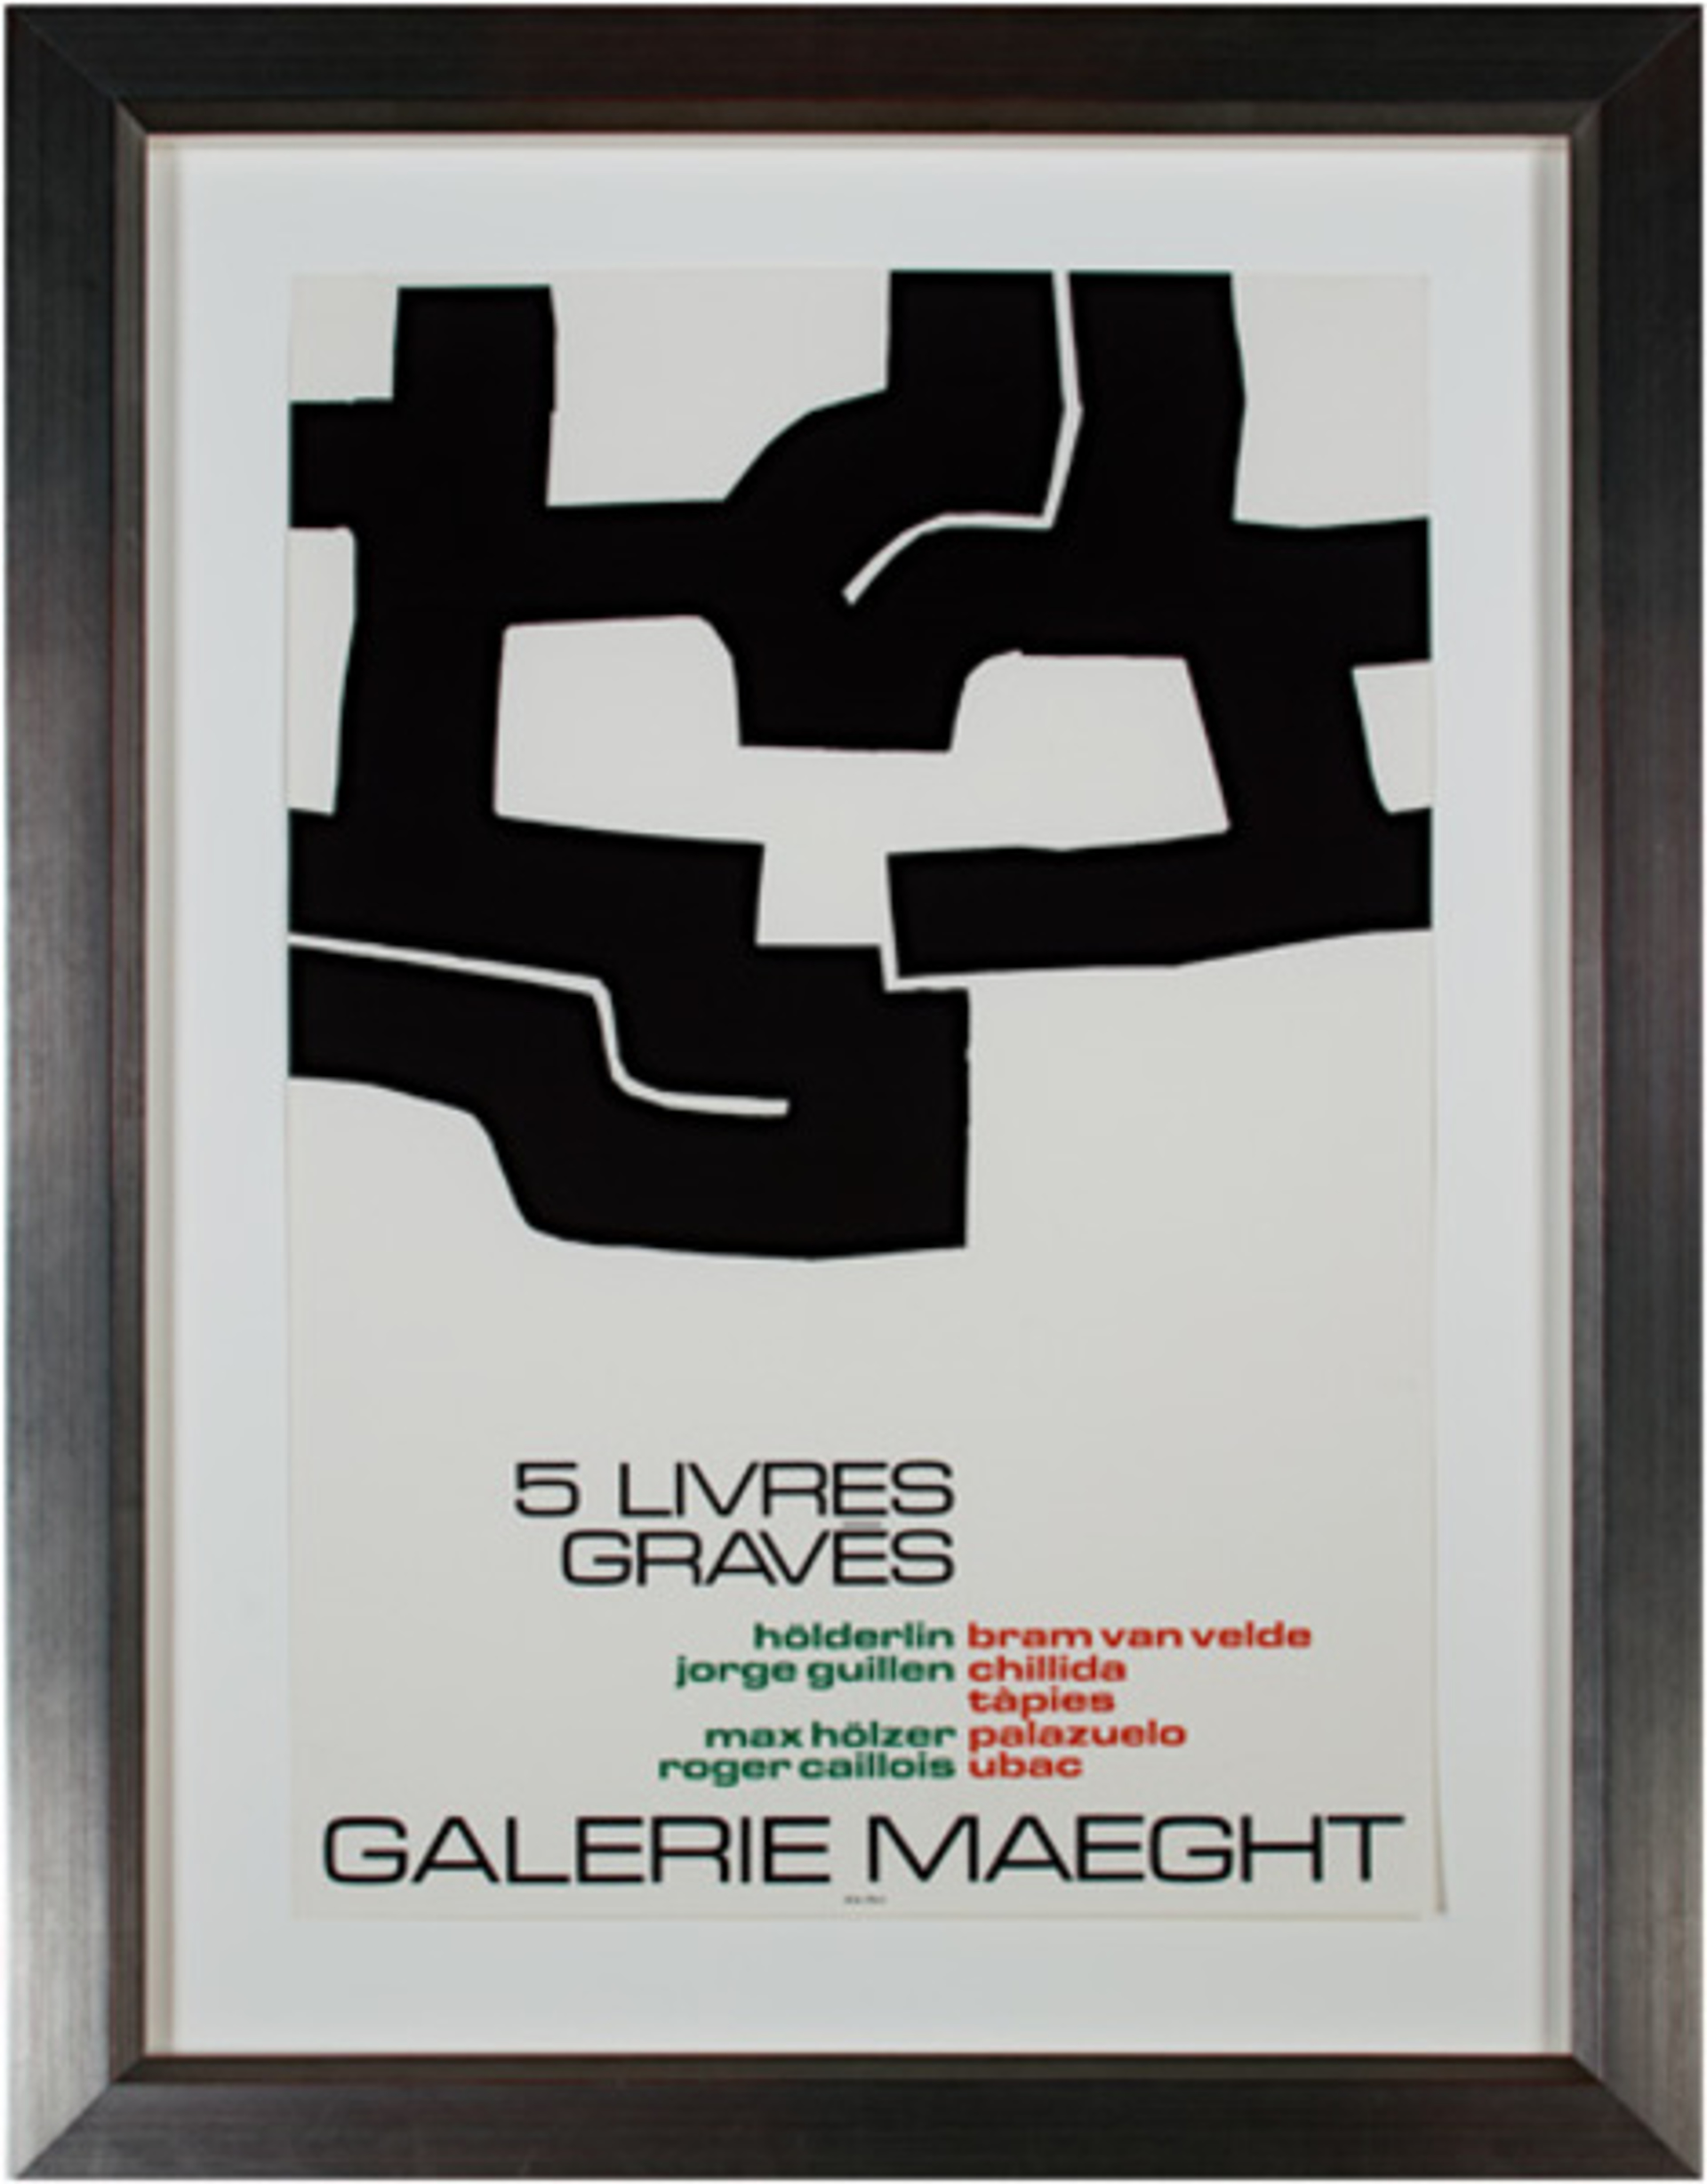 Galerie Maeght - 5 Livres Graves by Eduardo Chillida